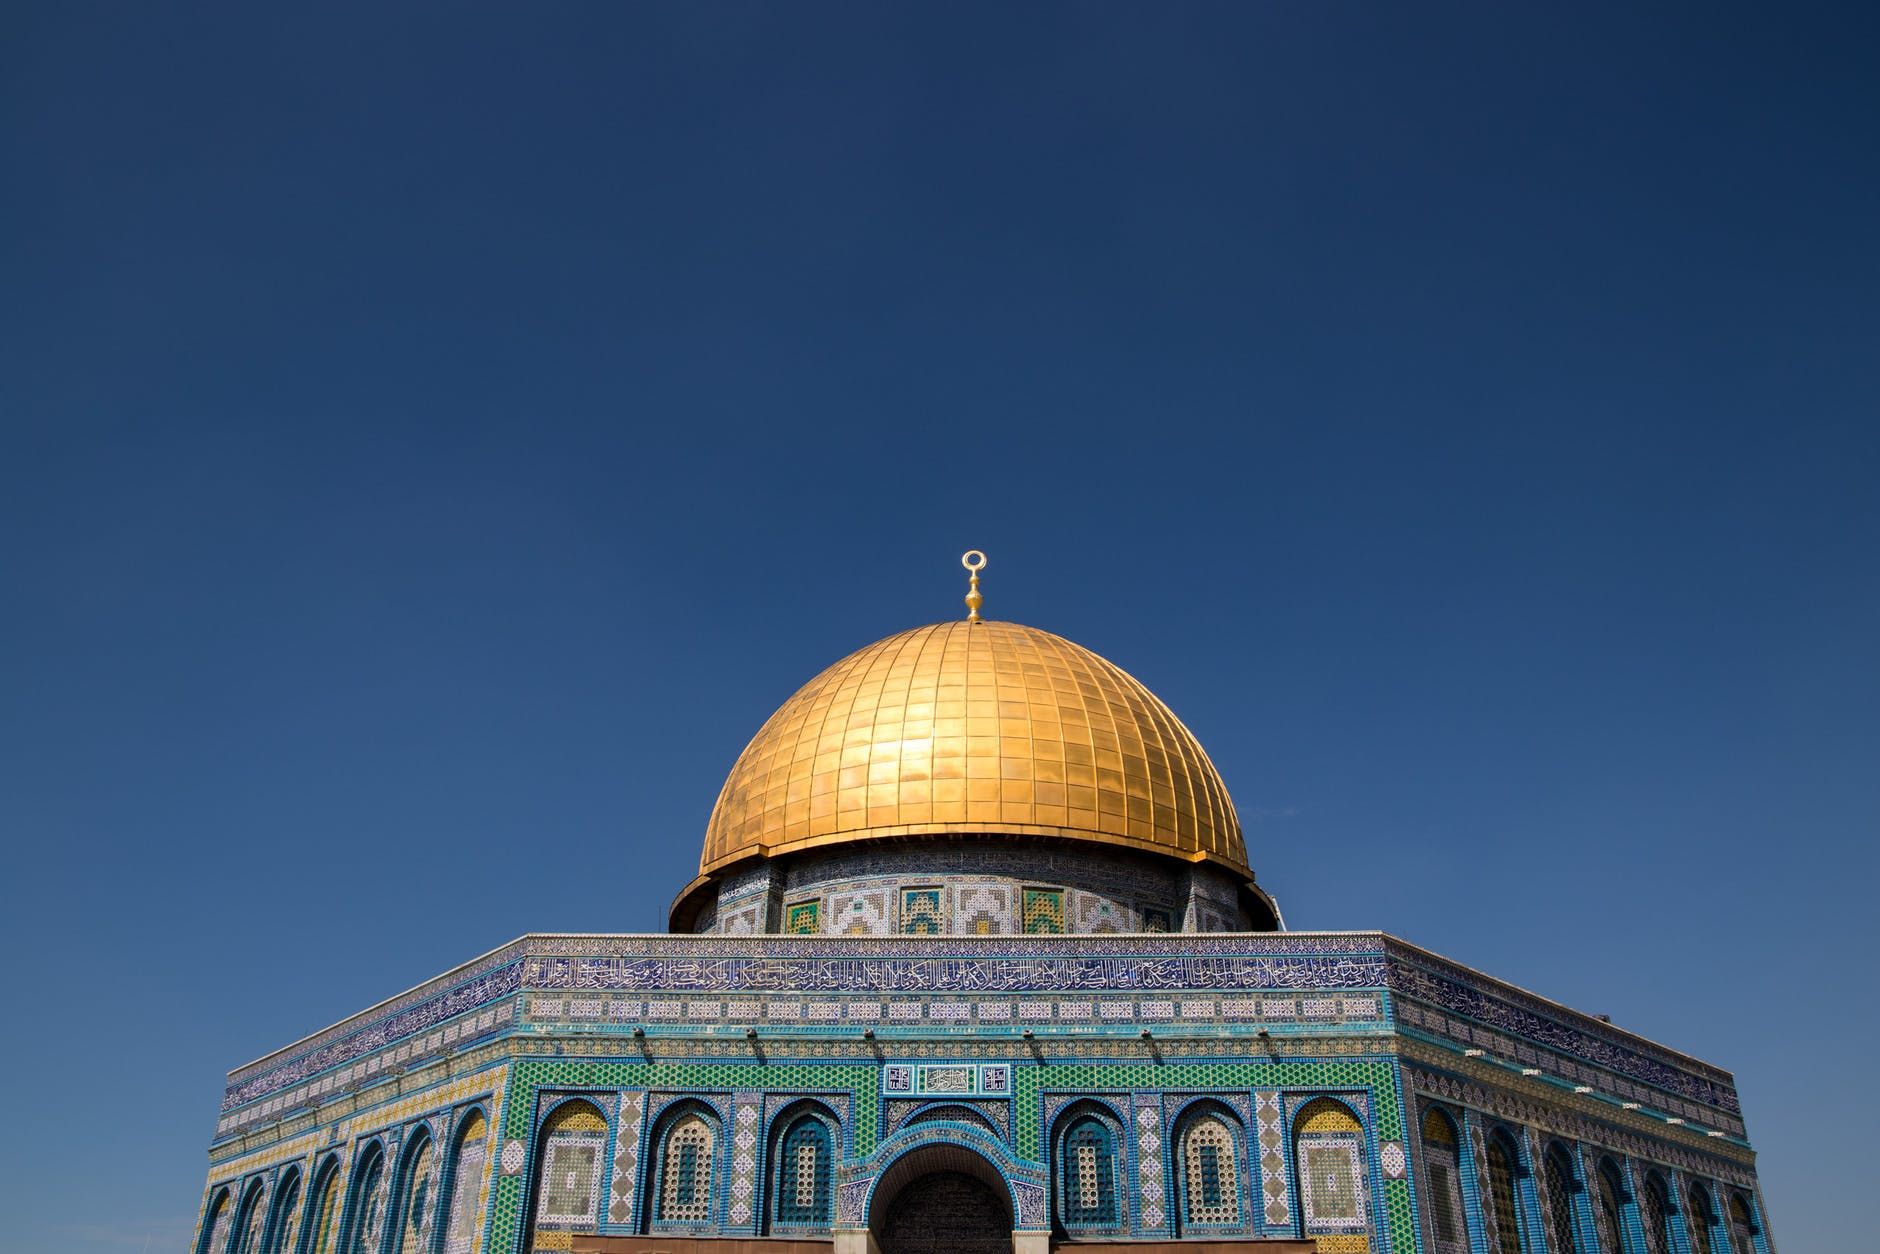 Inilah Sejarah Yerusalem, Kota Suci Bagi 3 Agama